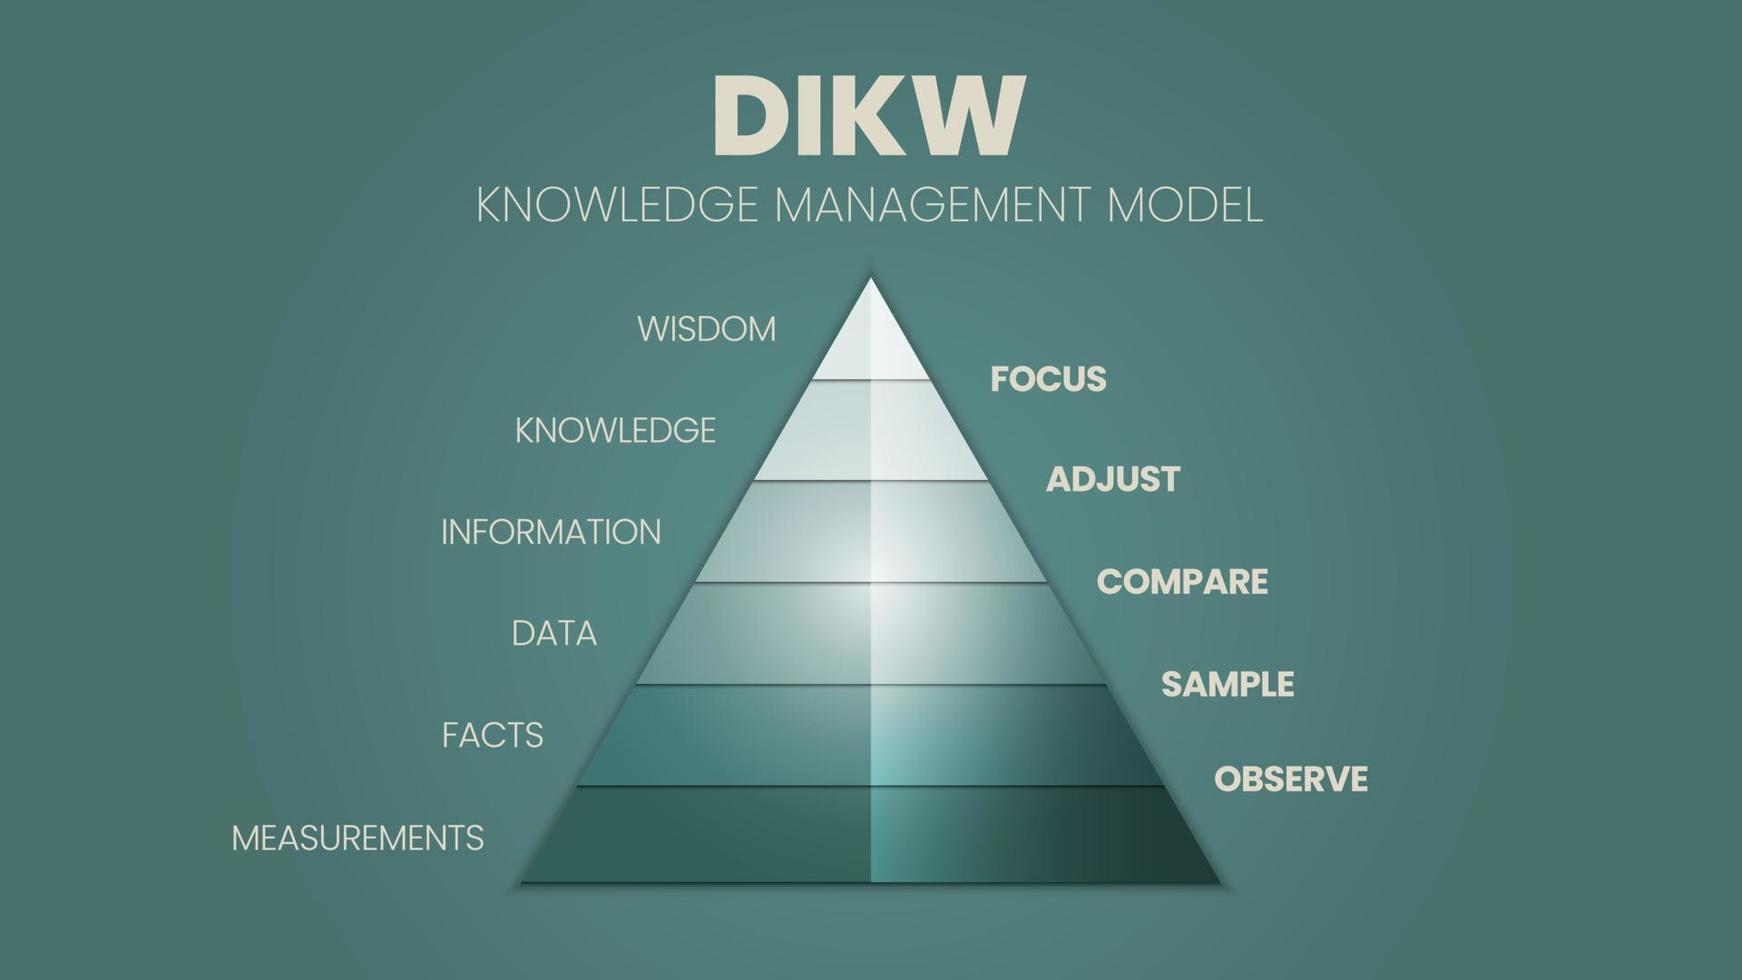 un'illustrazione vettoriale della gerarchia dikw ha saggezza, conoscenza, informazione e la piramide dei dati in 4 fasi qualitative, d è dati, i è informazione, k è conoscenza e w è saggezza.